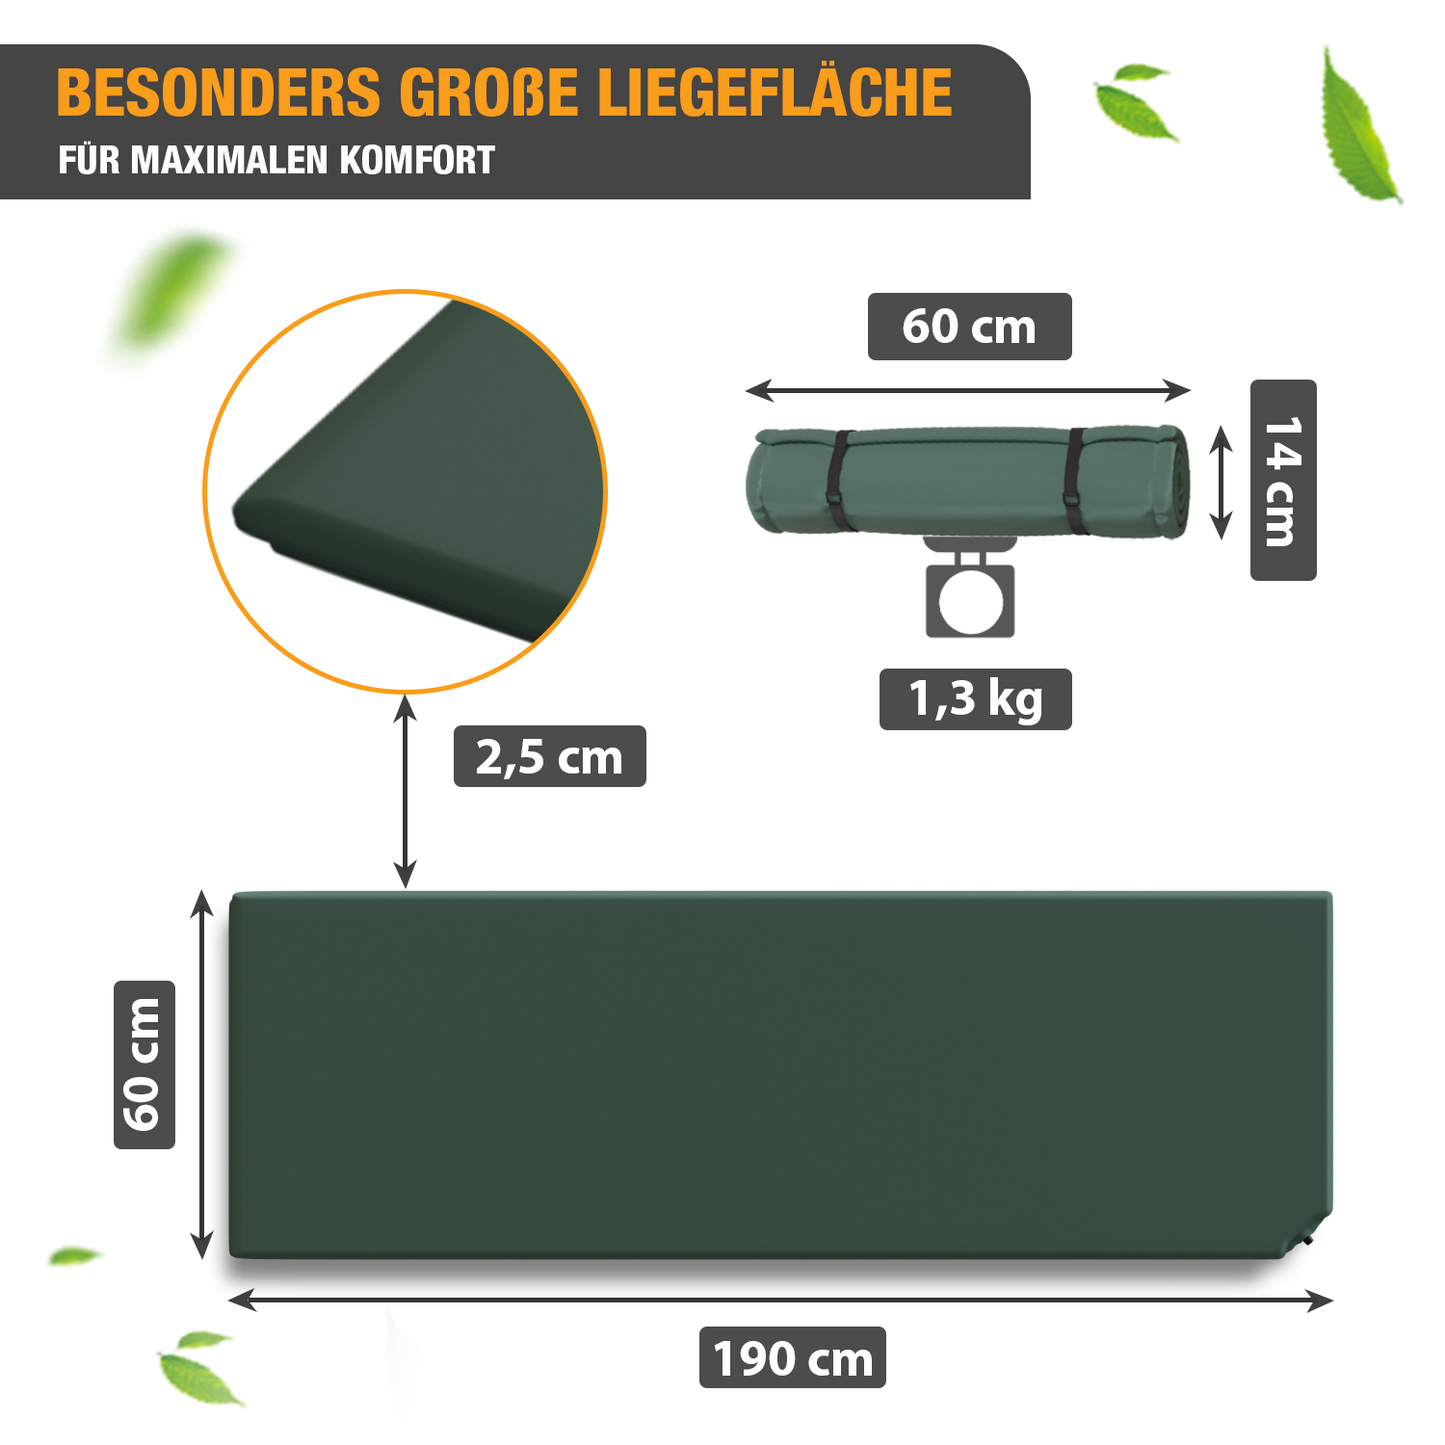 Isomatte selbstaufblasend - Luftbett - 190 x 60 x 2,5 cm - Luftmatratze - grün